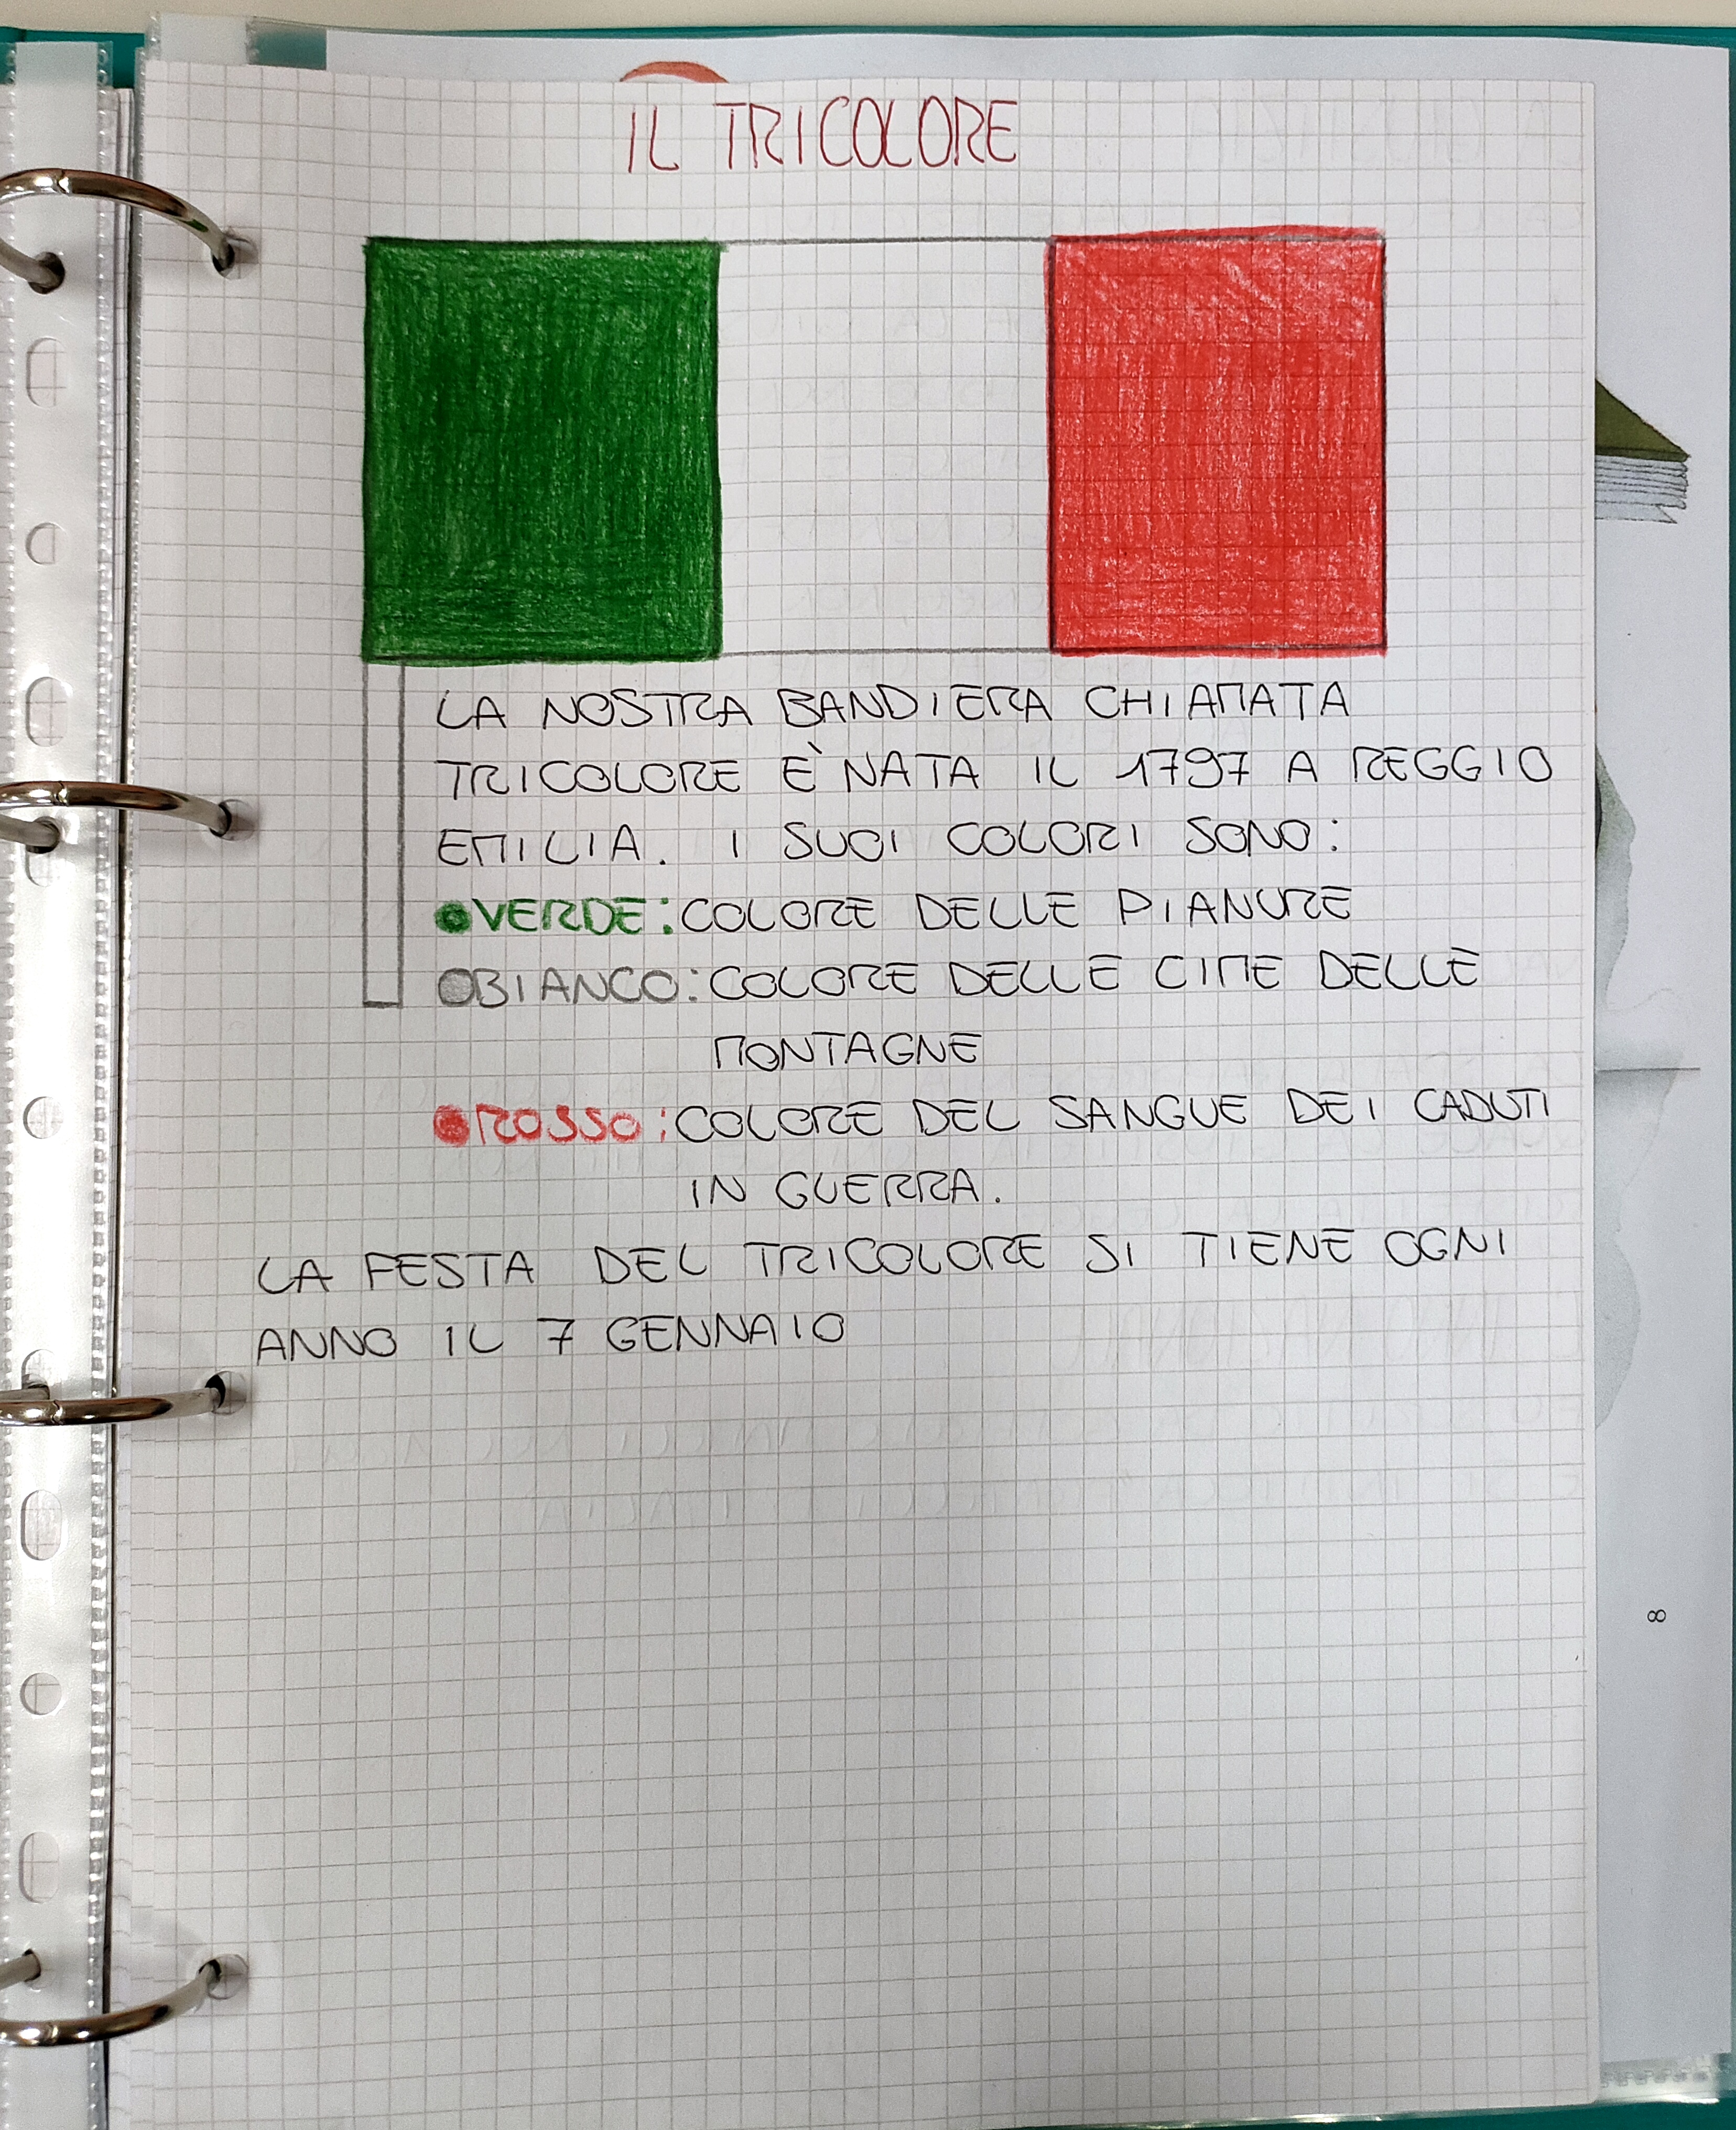 La Bandiera Italiana Spiegata ai Bambini: storia e colori